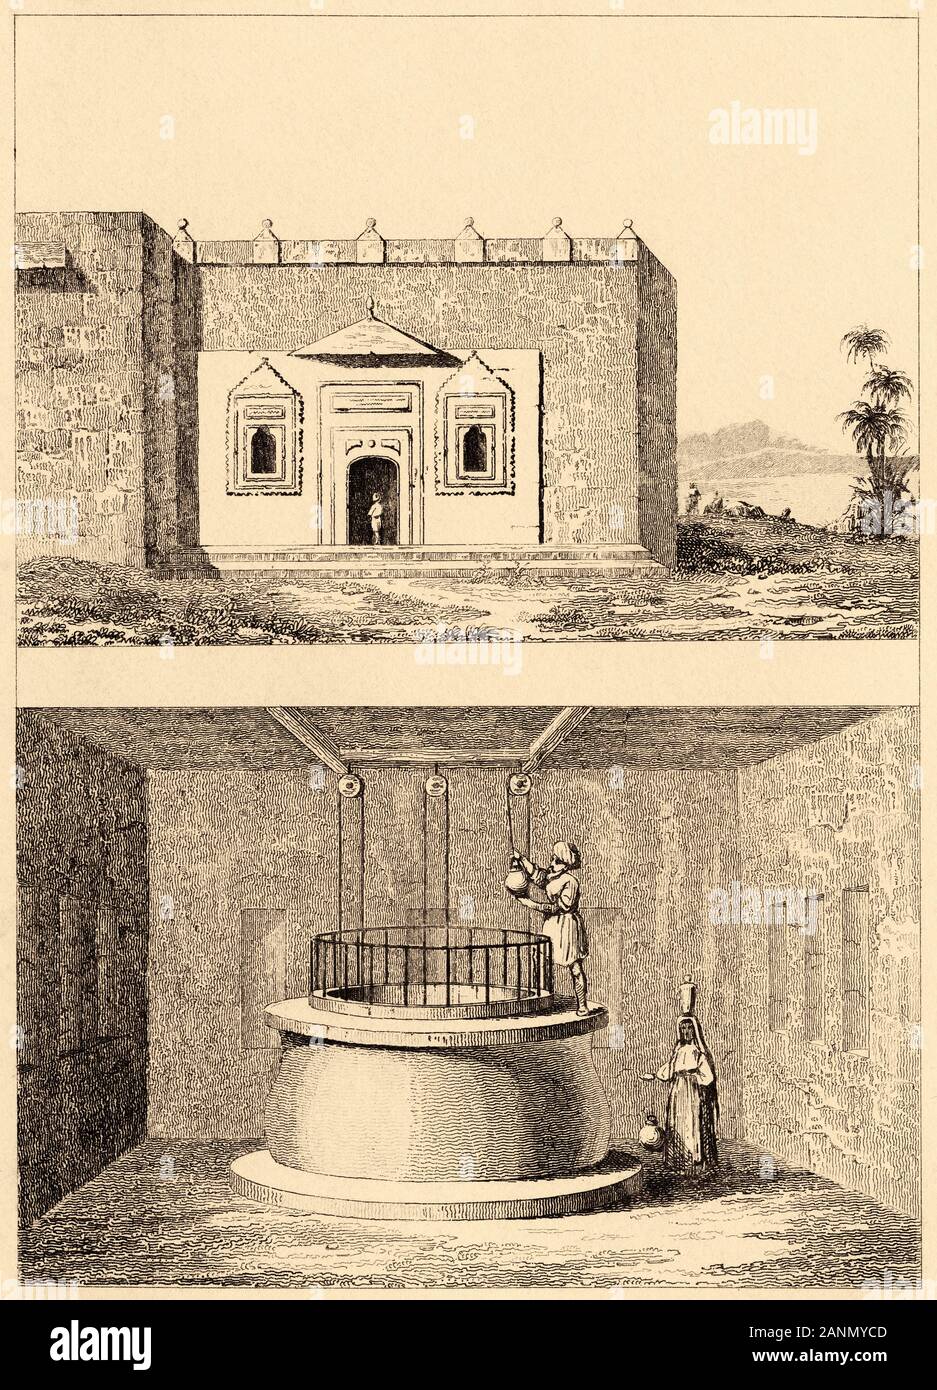 El Pozo de Zamzam, una fuente sagrada de La Meca. La historia de Arabia Saudita. Grabado antiguo publicado en L'Univers saudita, en 1841. Historia de la antigua Arabia Foto de stock